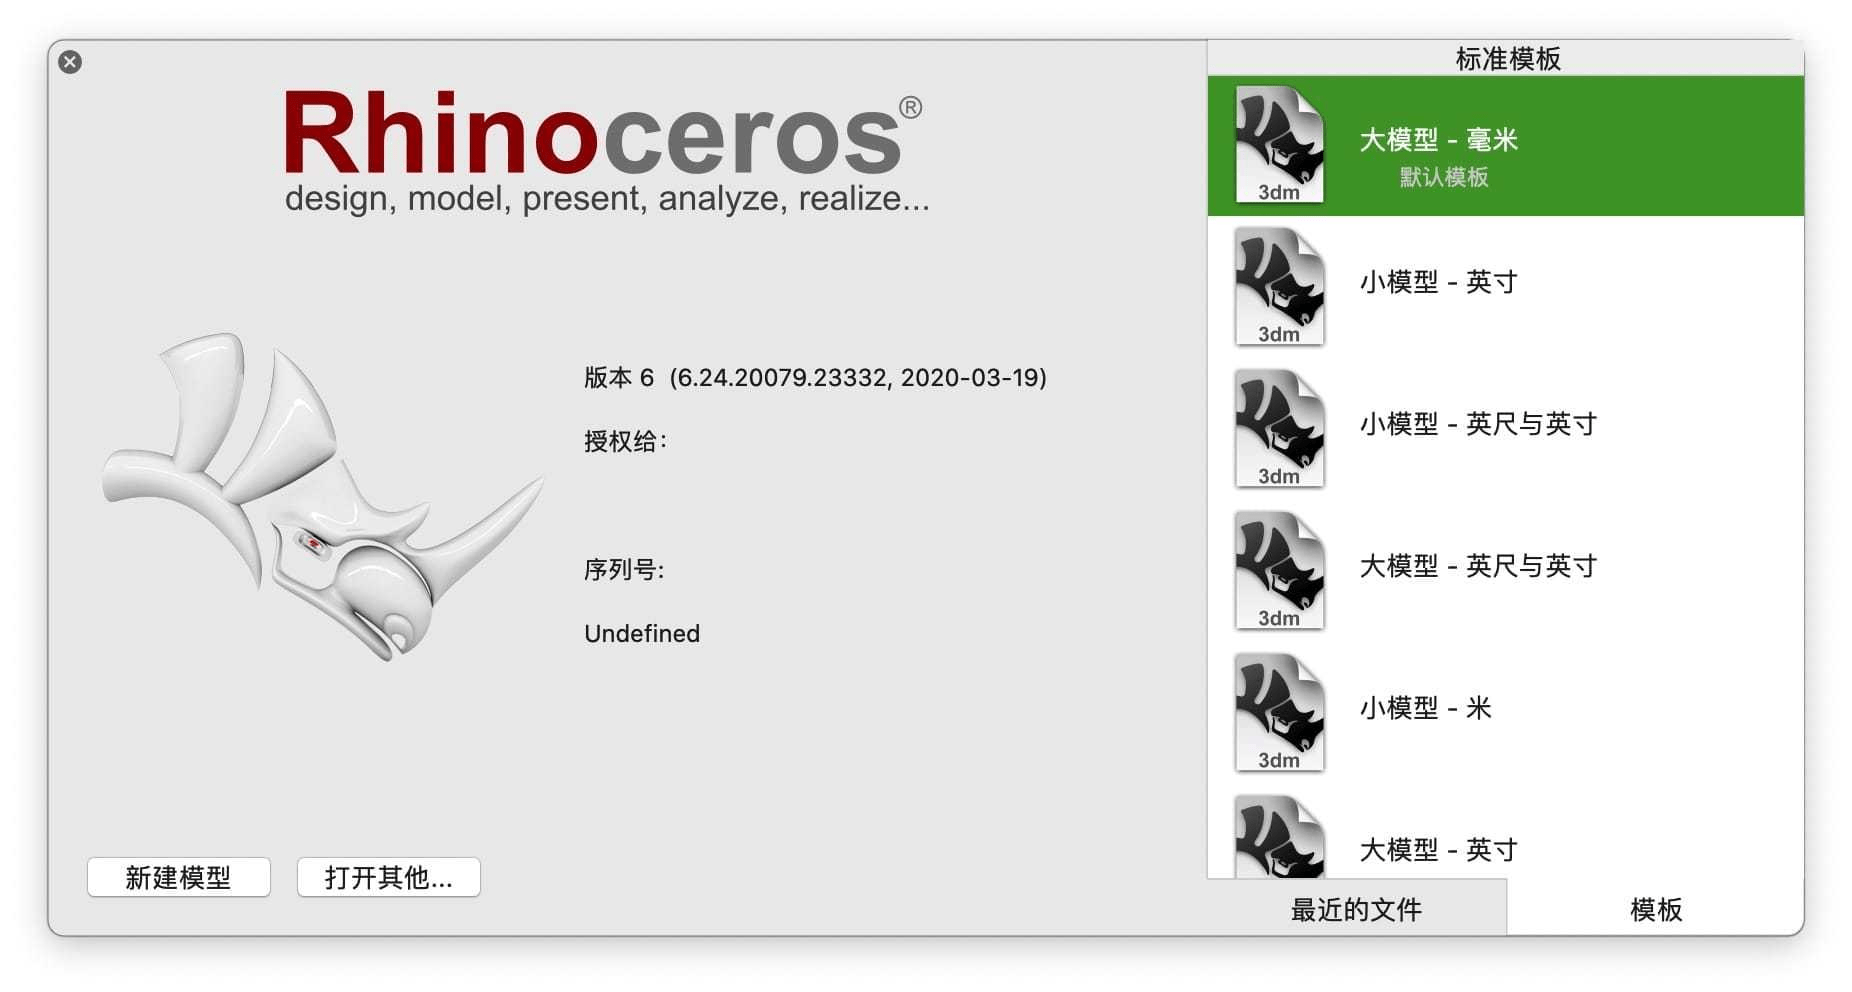 下载多边形破解版苹果:犀牛Rhino for Mac v7.26.22343 中文破解版下载 附各个平台安装包